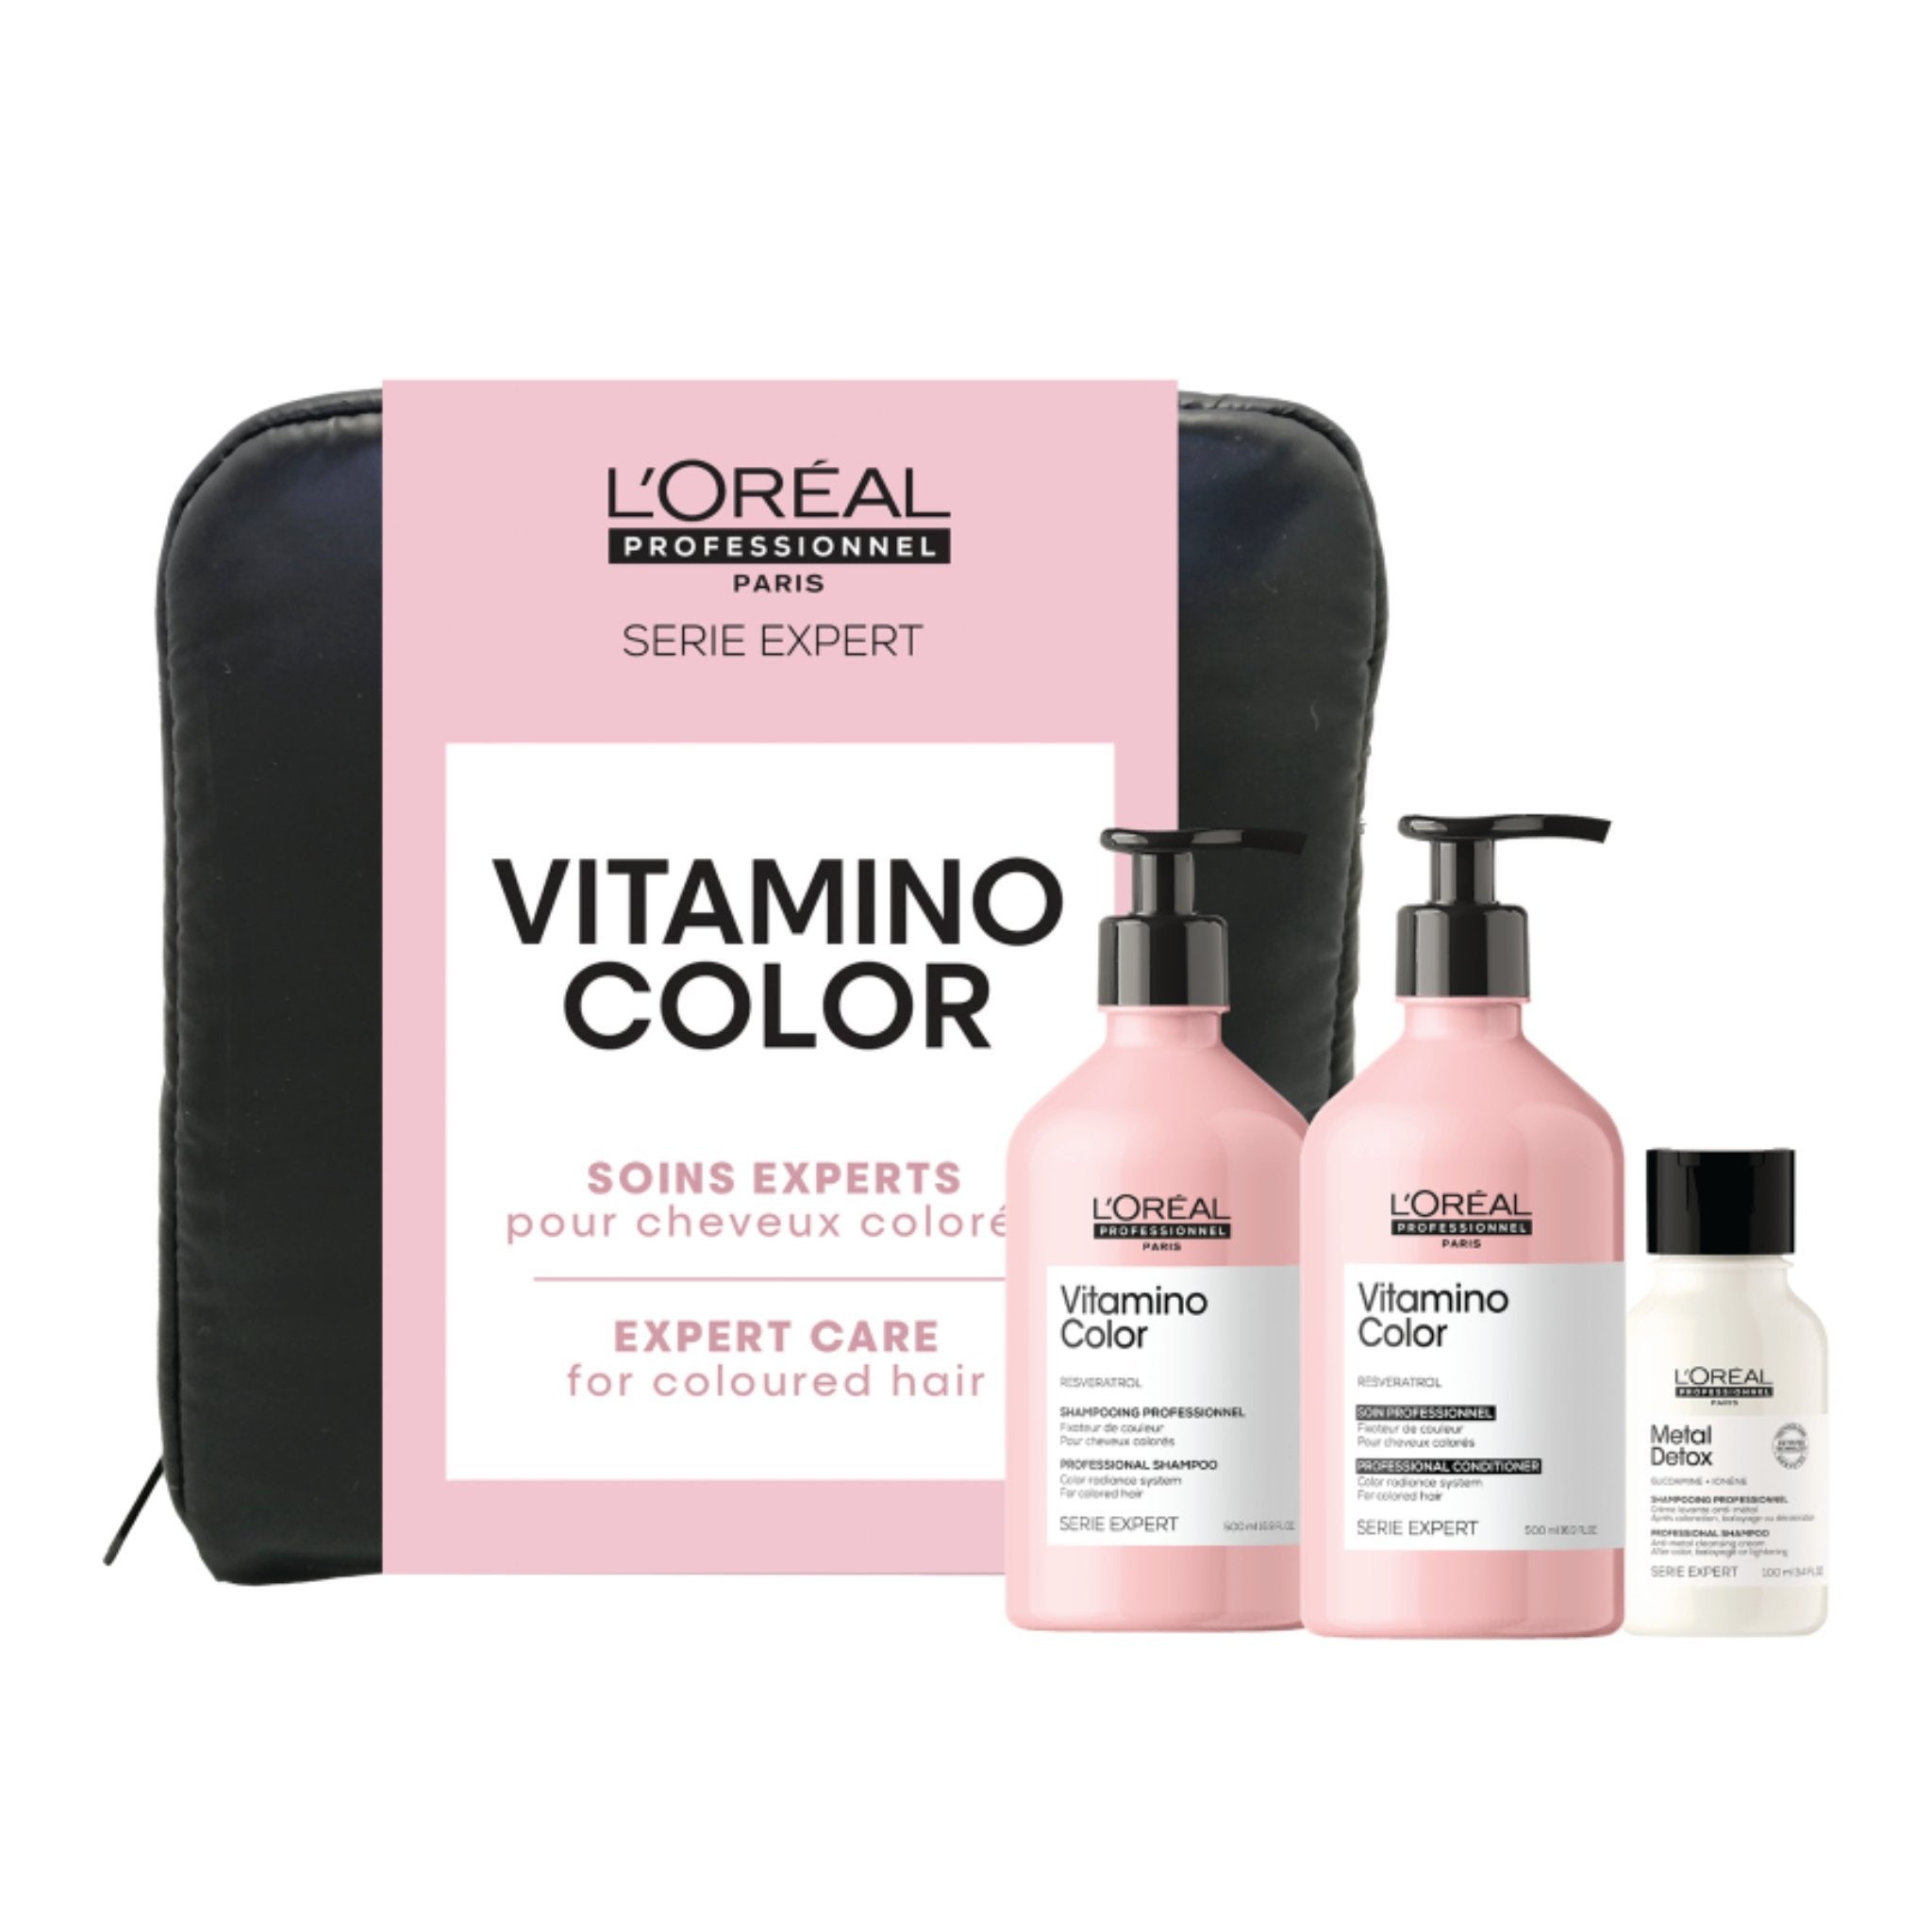 L'Oréal Série Expert. Coffret Vitamino Color - Concept C. Shop